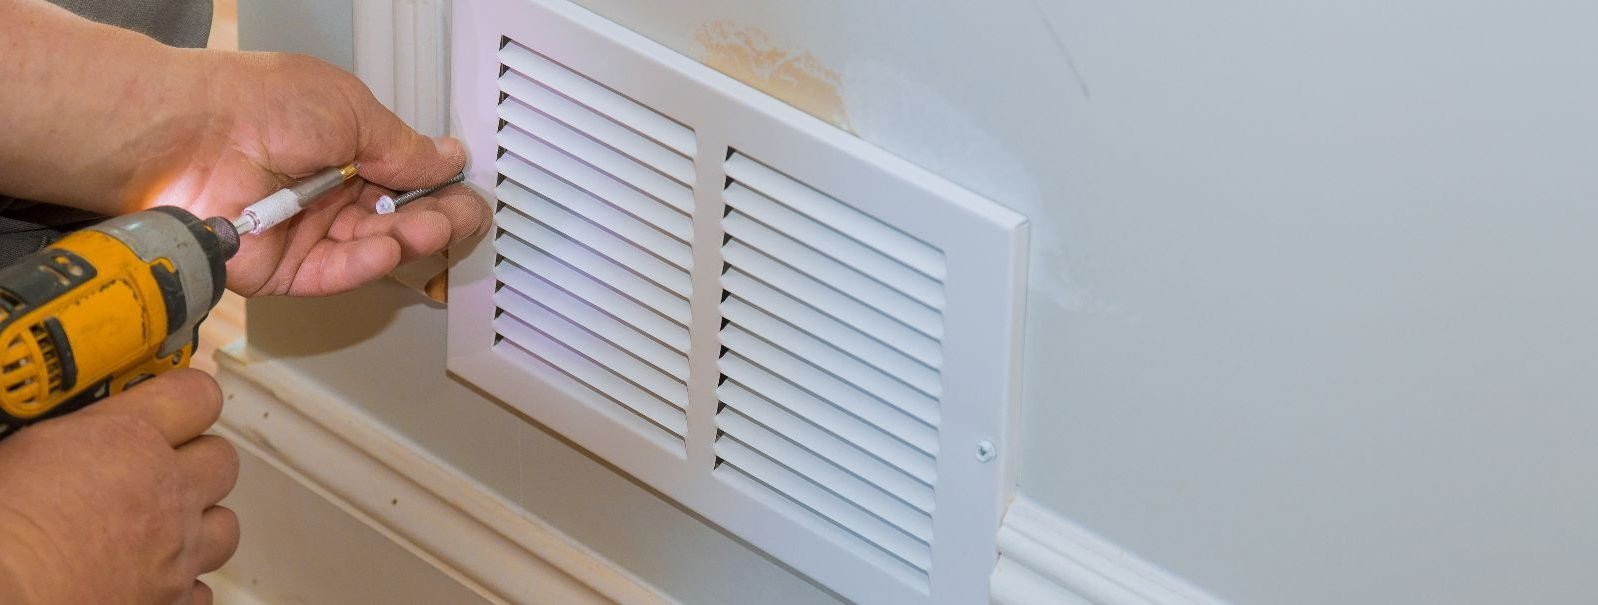 Teie kodu siseõhu kvaliteedi tagamine on ülioluline teie tervisele ja teie kütte-, ventilatsiooni- ja jahutussüsteemi (HVAC) tõhususele. Üks lihtsamaid, kuid kõ